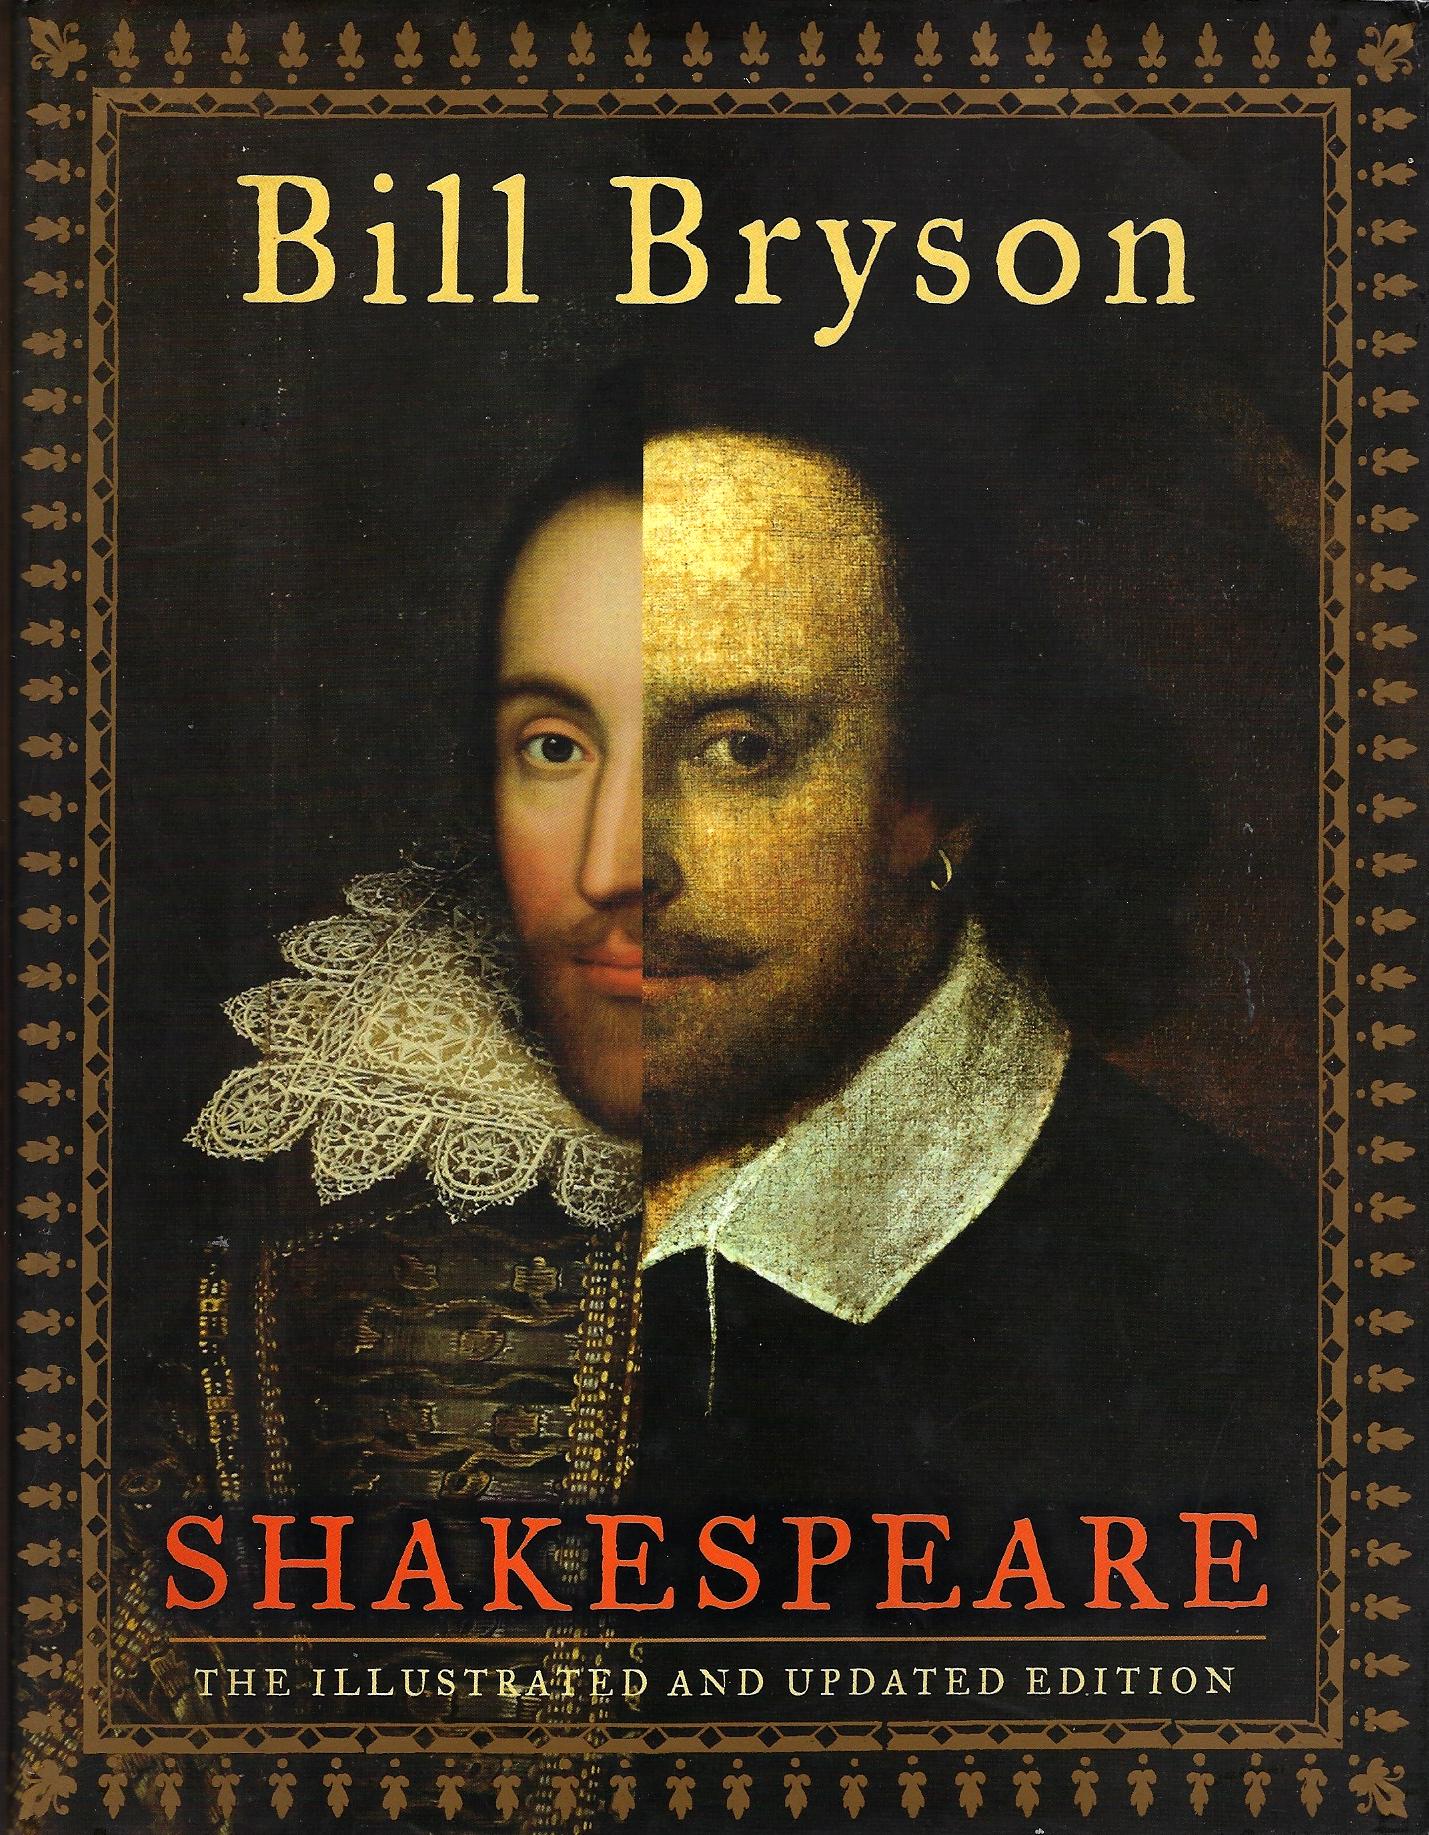 1700 словами. Билл Шекспир. Уильям Шекспир марка. Билл Брайсон Шекспир весь мир театр. Bryson Bill "the body".